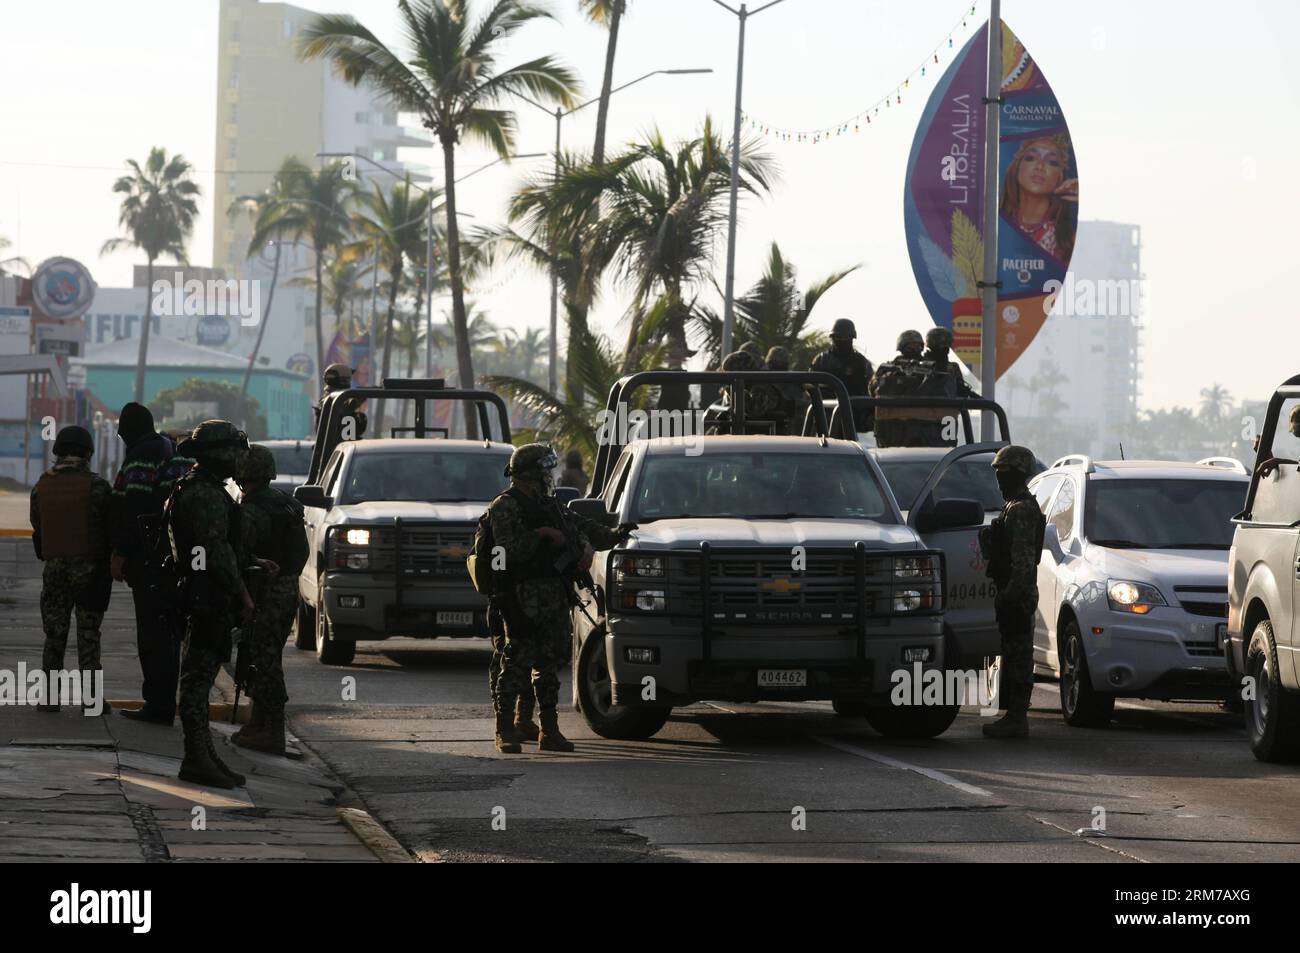 (140222) -- SINALOA, 22 février 2014 (Xinhua) -- des soldats de la marine mexicaine gardent une rue à Mazatlan, Sinaloa, Mexique, le 22 février 2014. Le chef du cartel mexicain de Sinaloa, Joaquin Guzman Loera, alias El Chapo Guzman, considéré par les États-Unis comme l un des barons de la drogue les plus puissants au monde, a été capturé par les autorités mexicaines et américaines en territoire mexicain, selon la presse locale. (Xinhua/Juan Perez) (ce) MEXIQUE-SINALOA-DROGUE Lord-CAPTUERED PUBLICATIONxNOTxINxCHN 140222 Sinaloa février 22 2014 XINHUA soldats de la Garde navale MEXICAINE une rue à Mazatlan Sinaloa Mexico ON Banque D'Images